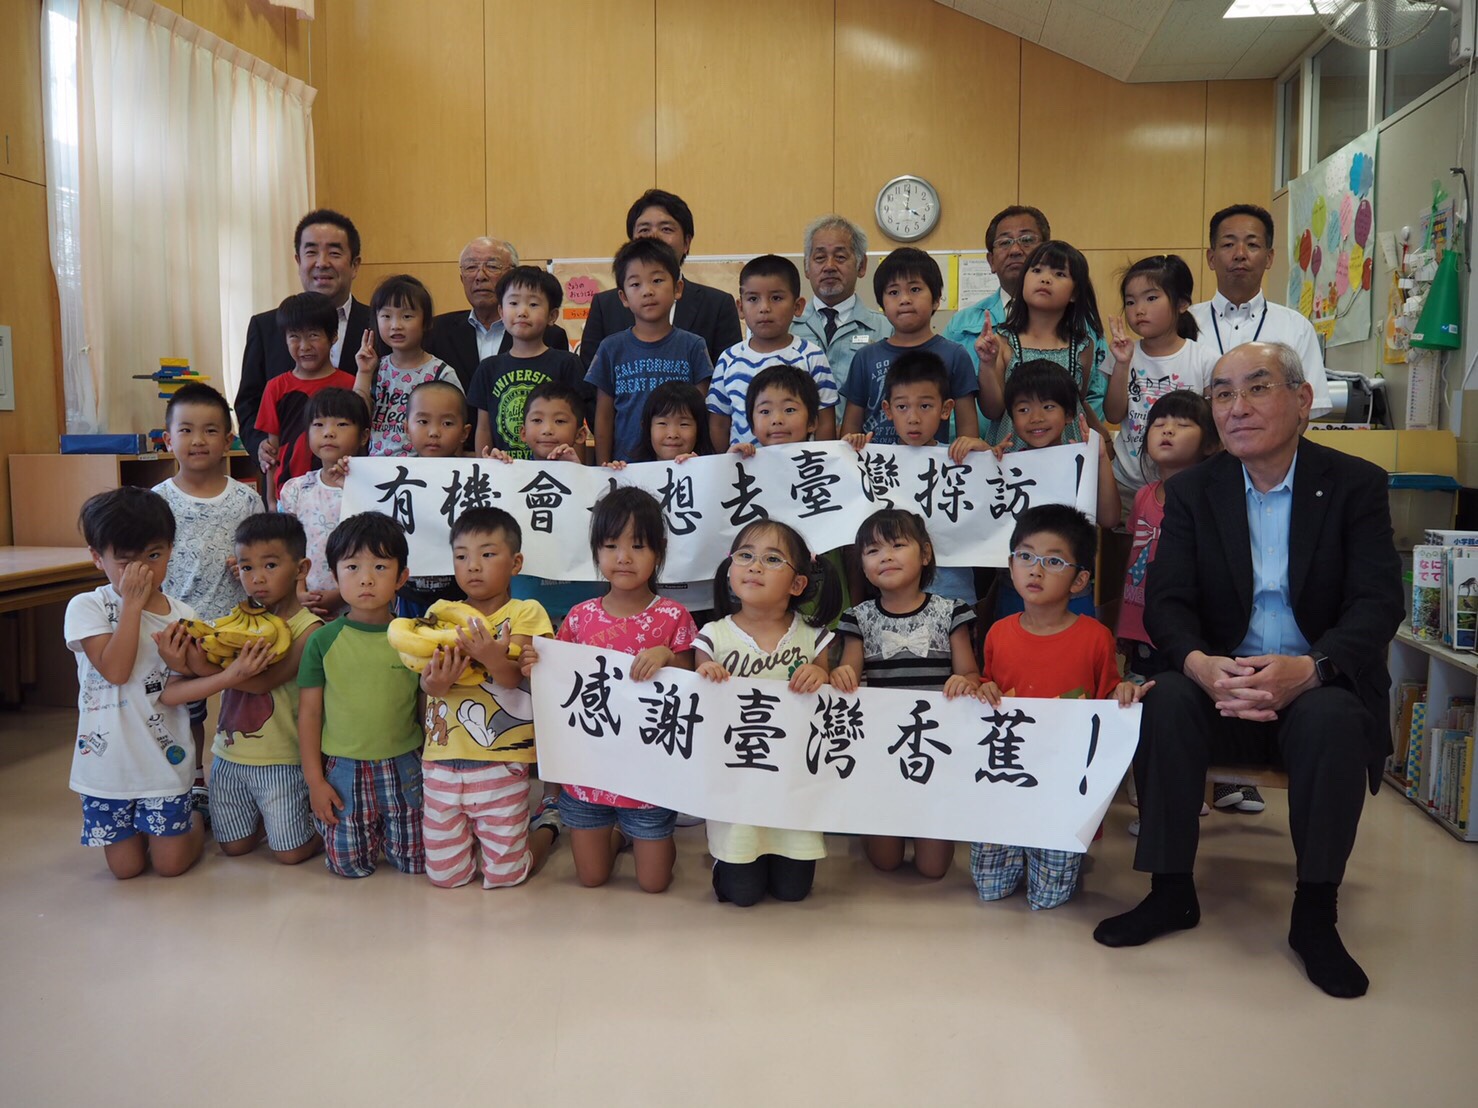 臺灣香蕉向下扎根，持續並擴大供應日本學童午餐 | 文章內置圖片